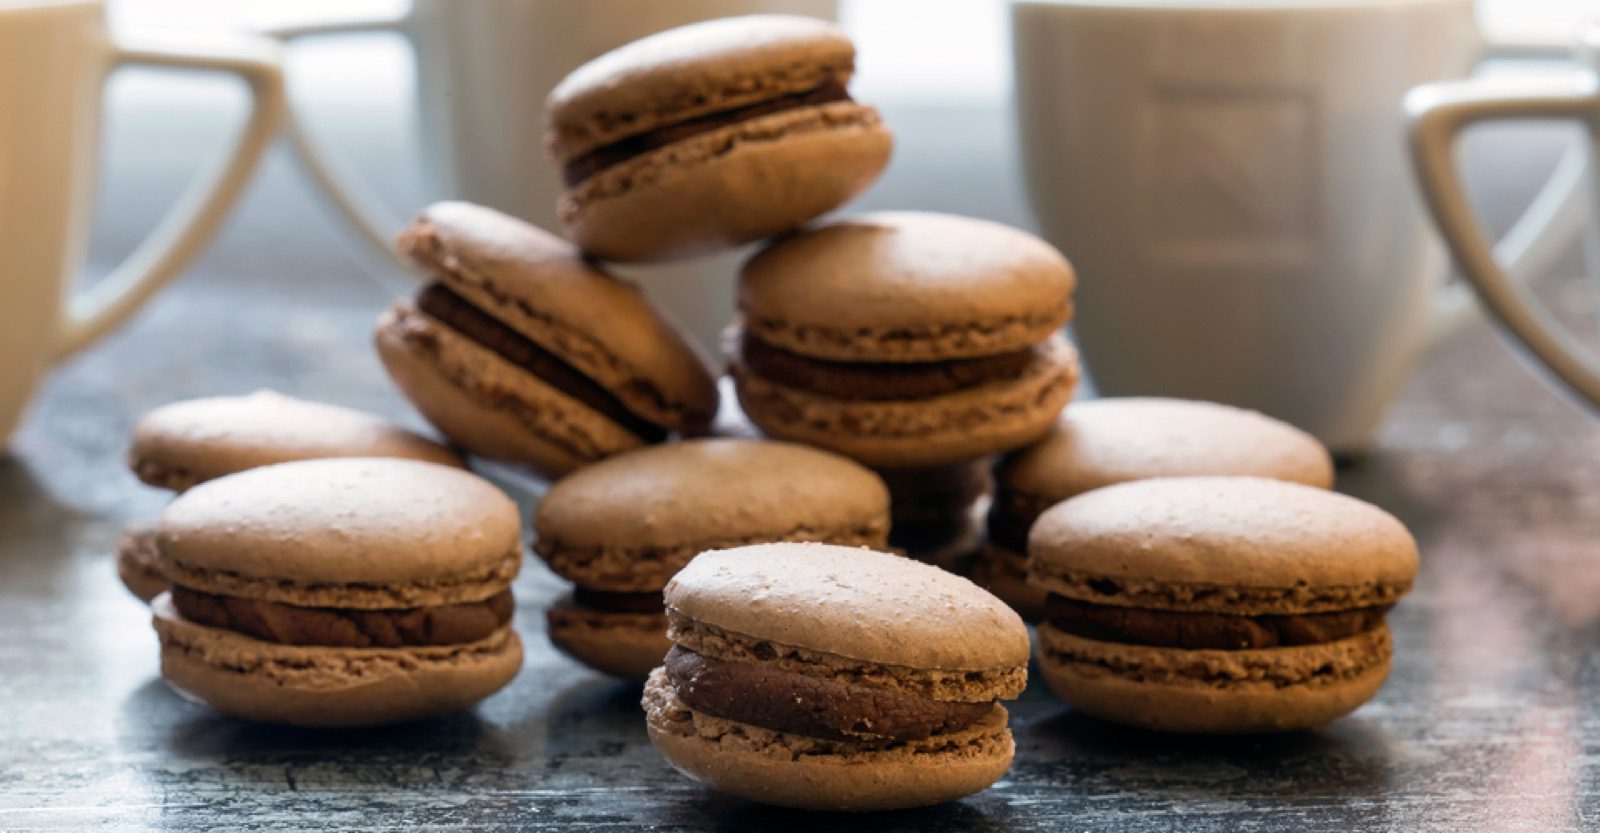 Ihanat macaron-leivokset ovat kotoisin herkkusuiden Ranskasta. Nämä haastavat pienet leivonnaiset täytetään taivaallisella suklaatäytteellä.